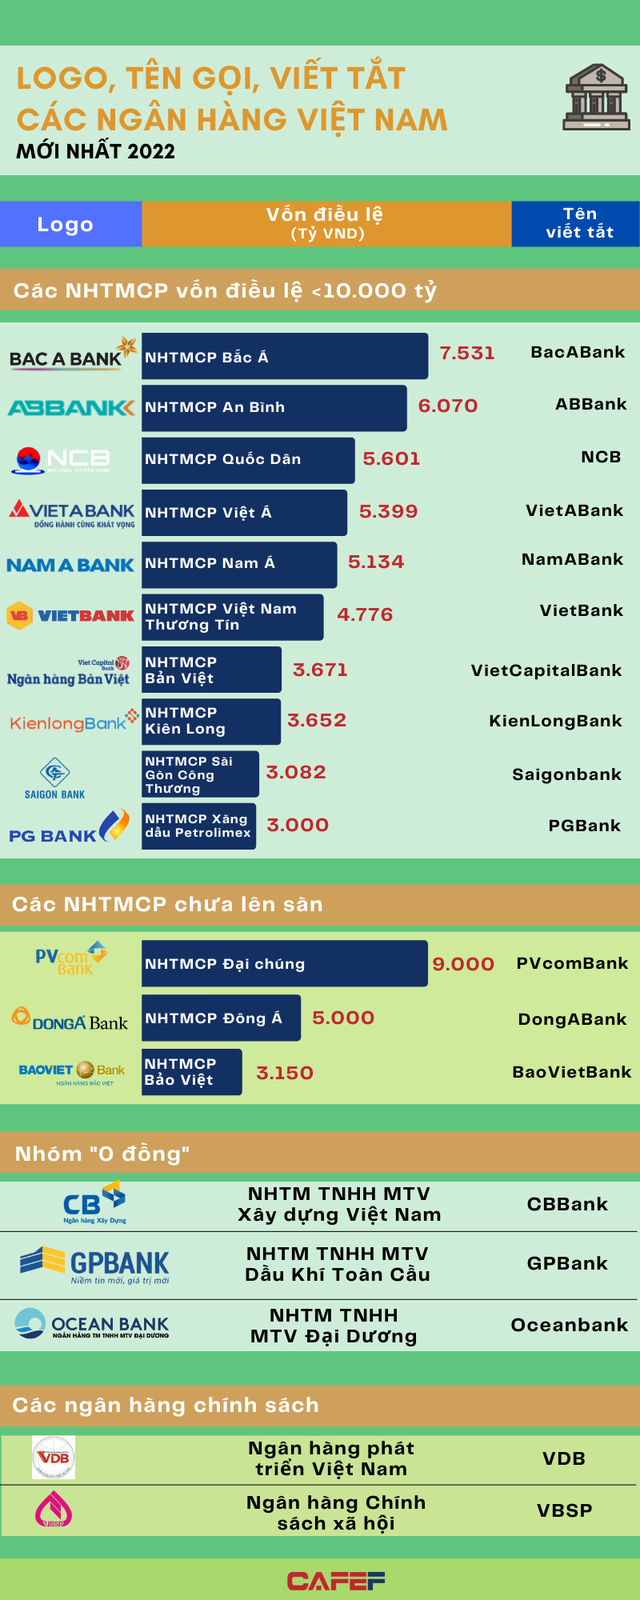 Tên gọi, logo và quy mô vốn điều lệ của các ngân hàng Việt đầu năm 2022 - Ảnh 2.